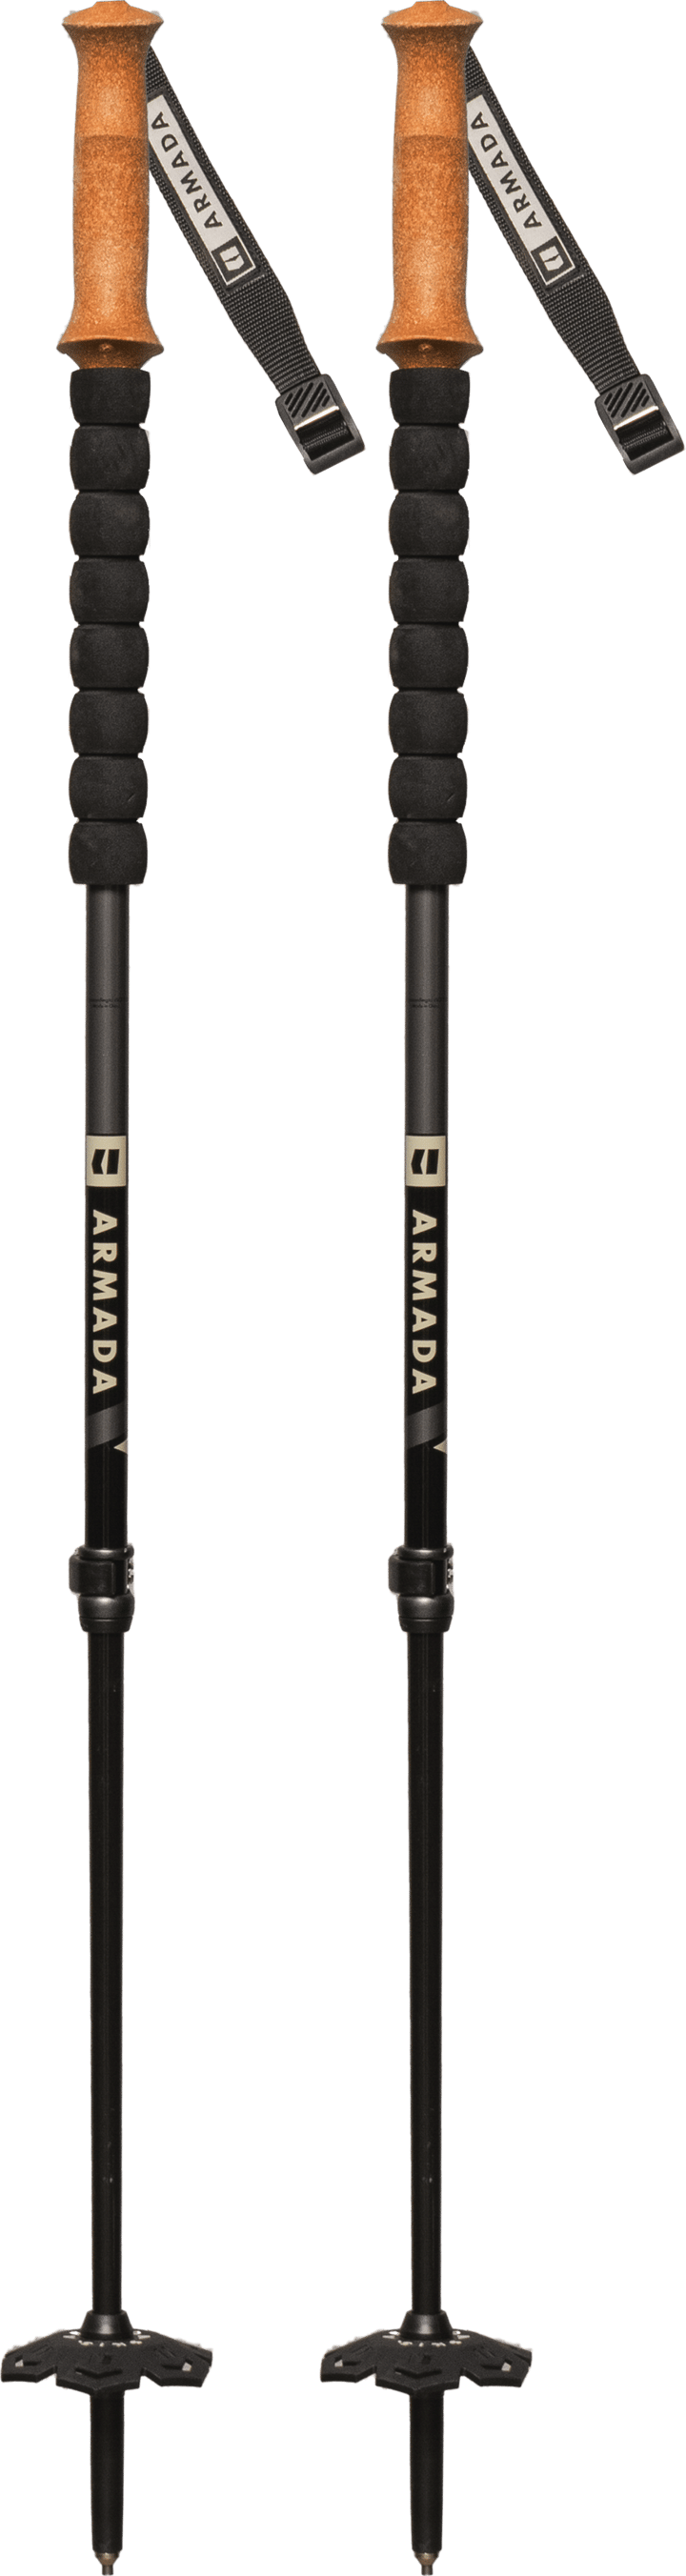 Carbon Adjustable Indigo/Black ARMADA